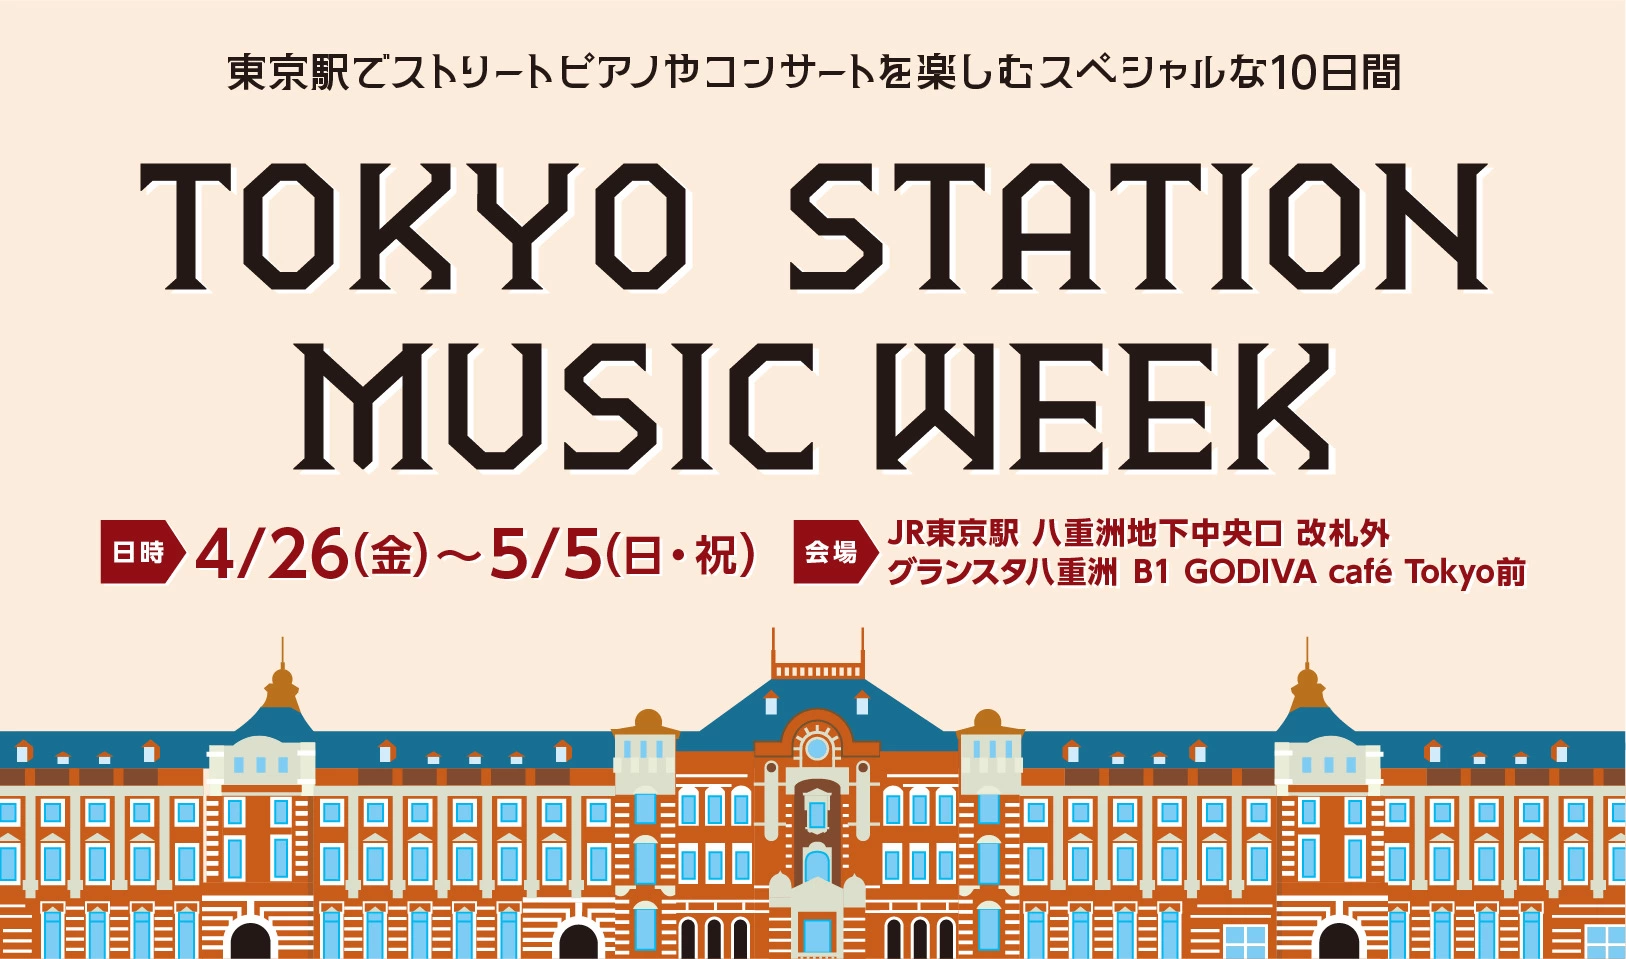 TOKYO STATION MUSIC WEEK